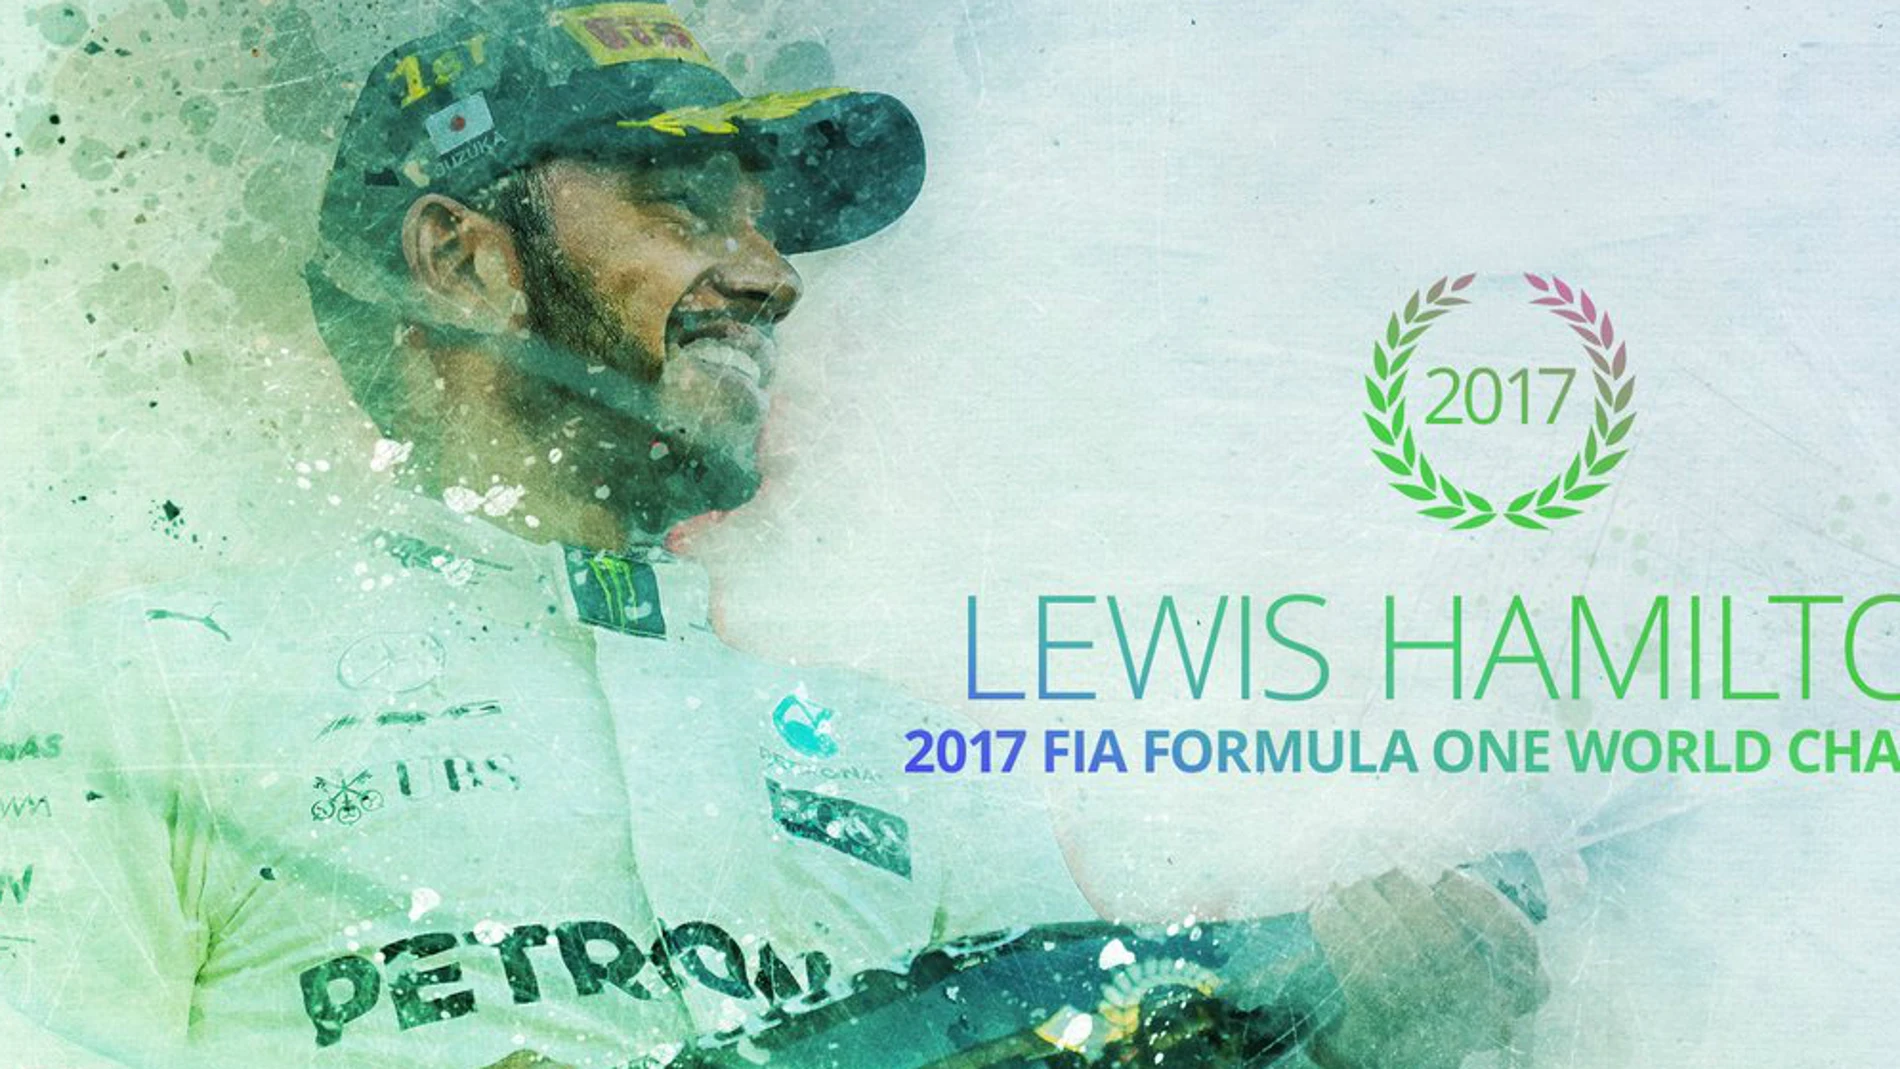 Hamilton, campeón del mundo de la F1 2017